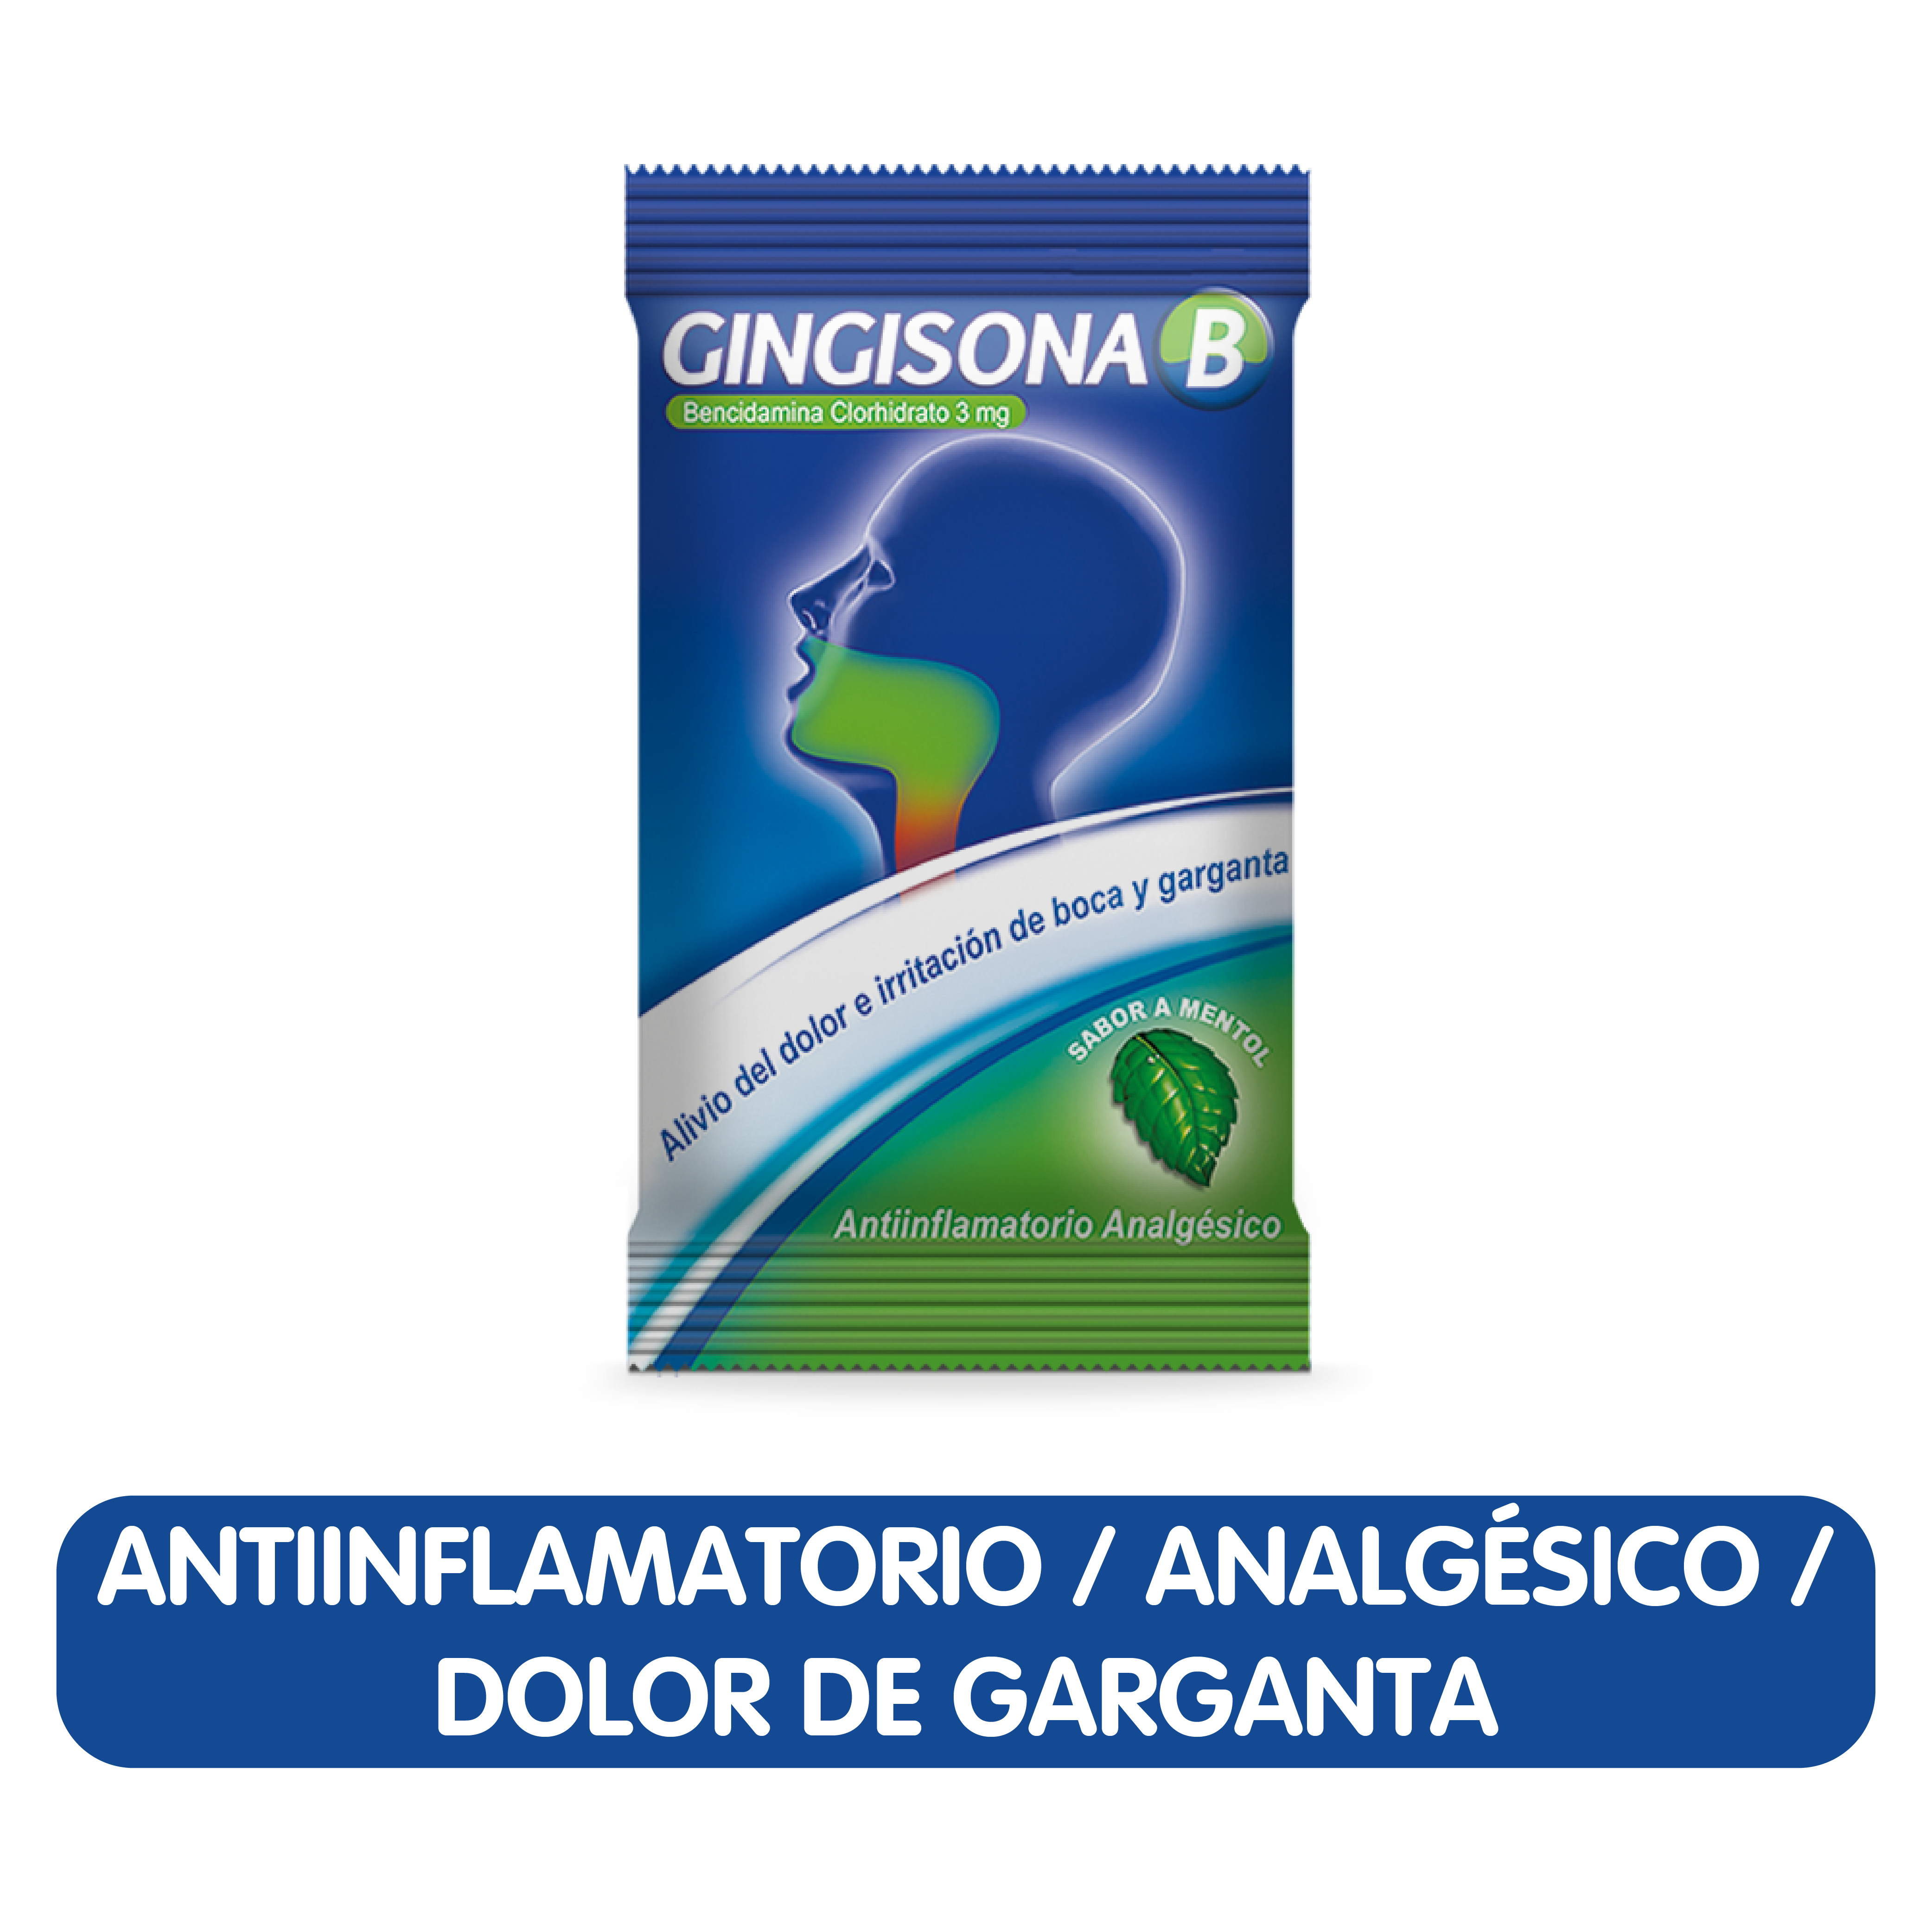 Gingisona B